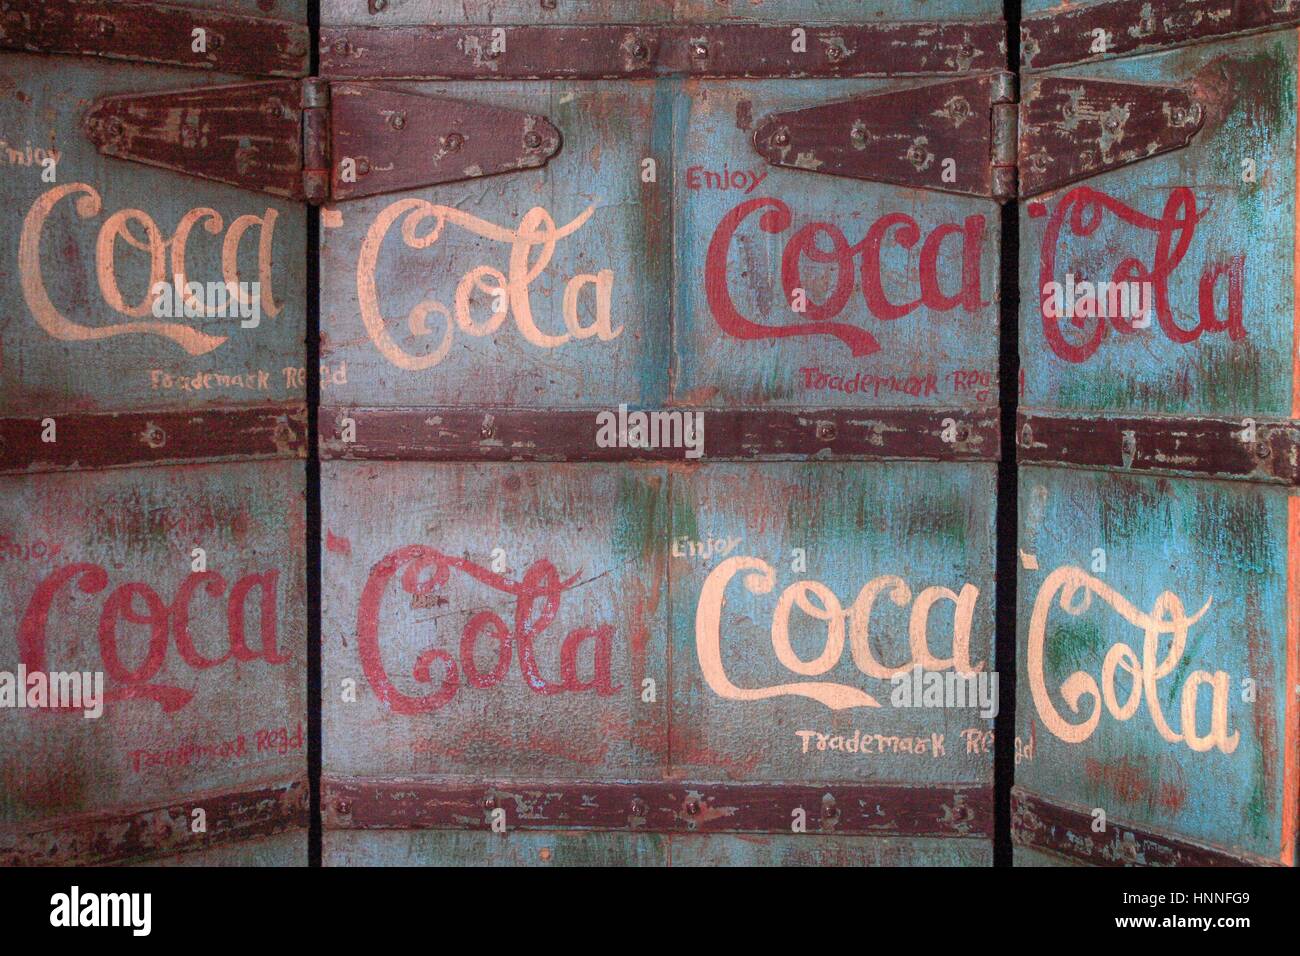 Ancien logo coca cola à Marrakech, Maroc Banque D'Images